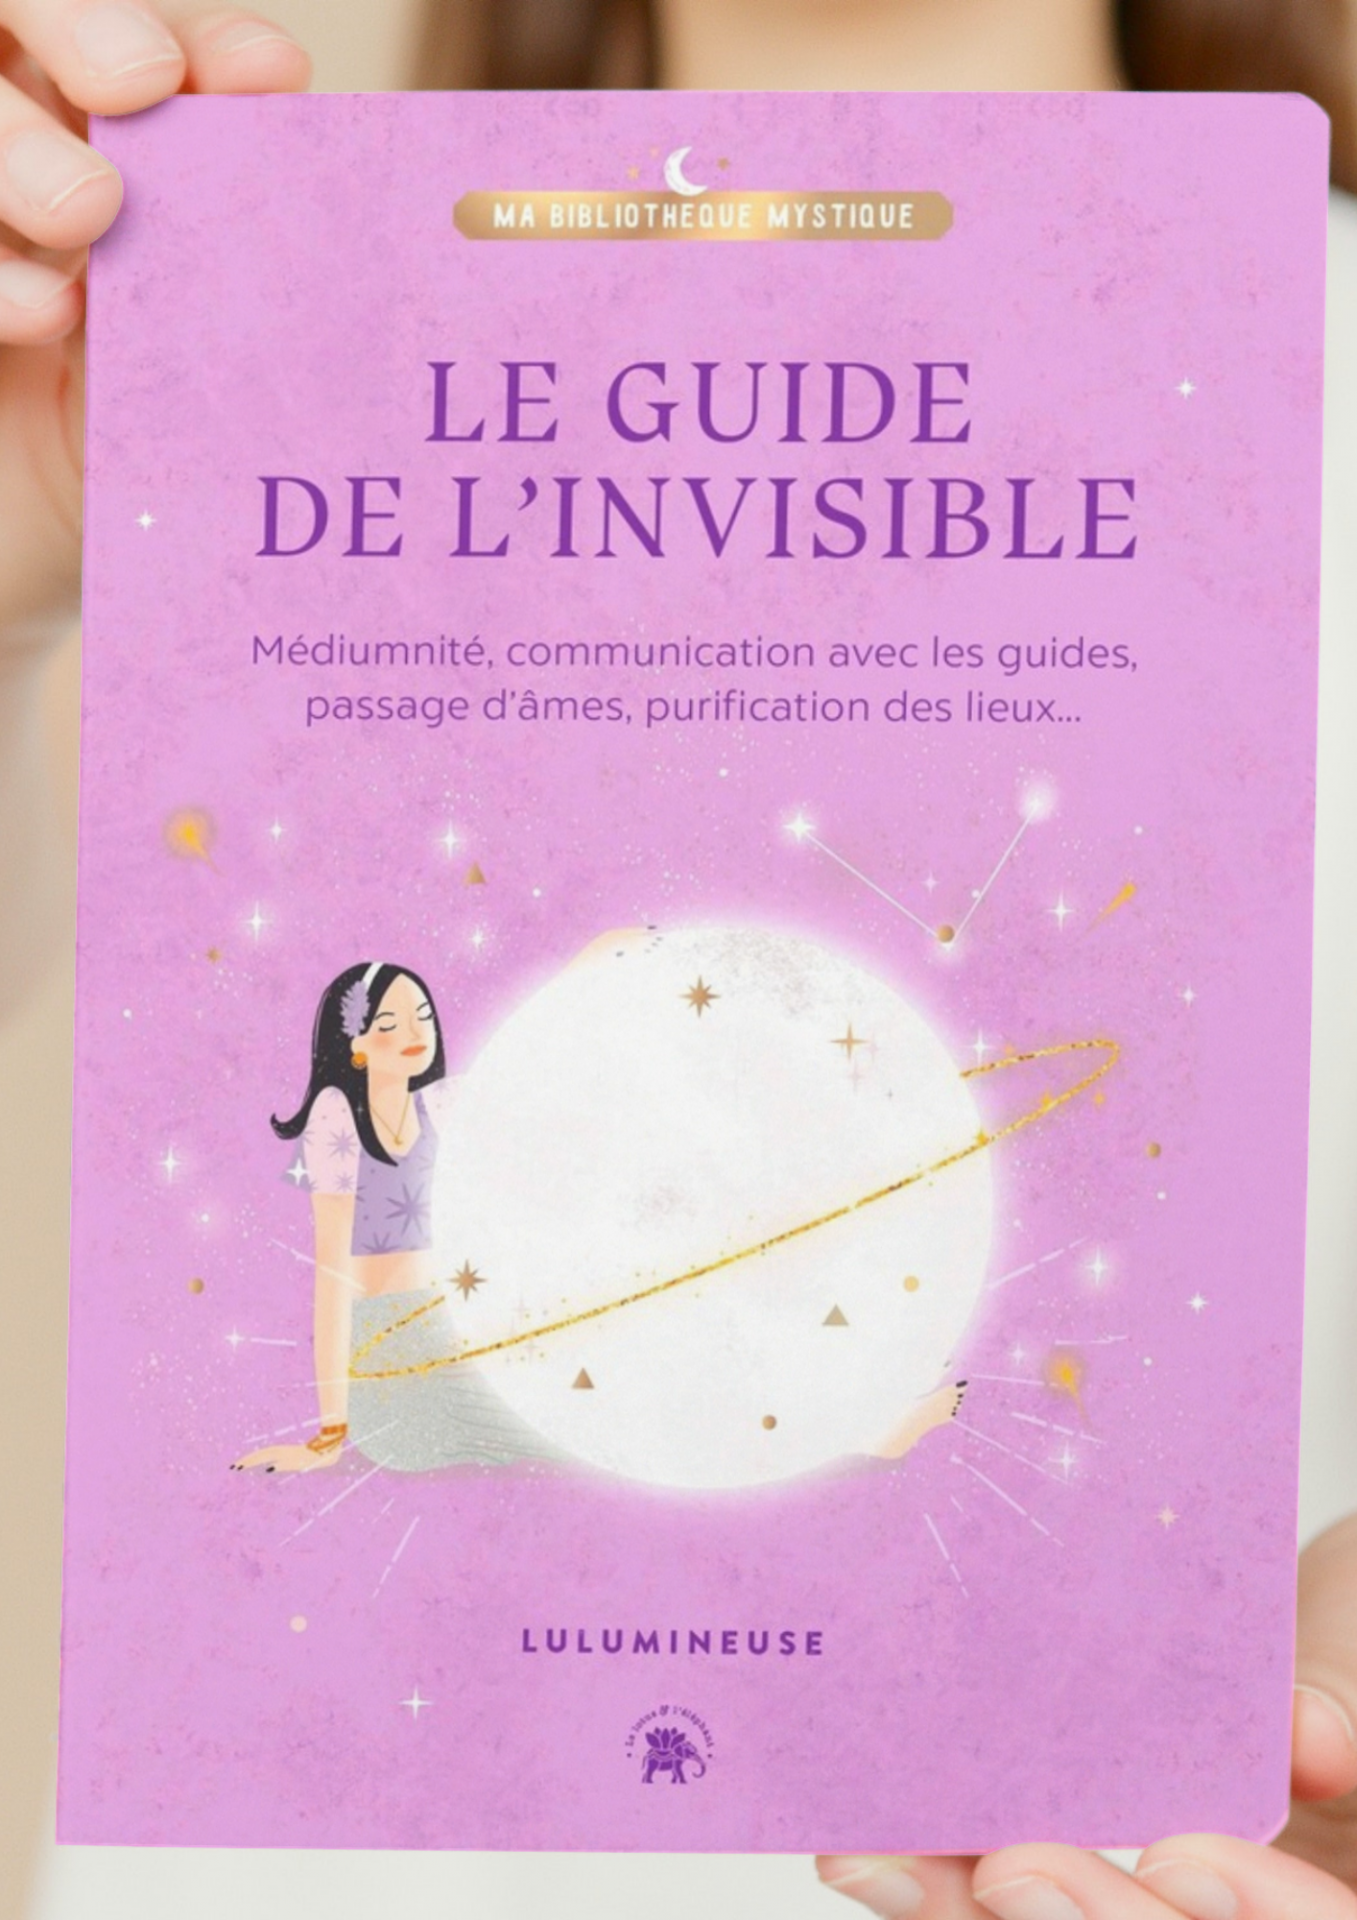 Le Guide de l'invisible enfin disponible